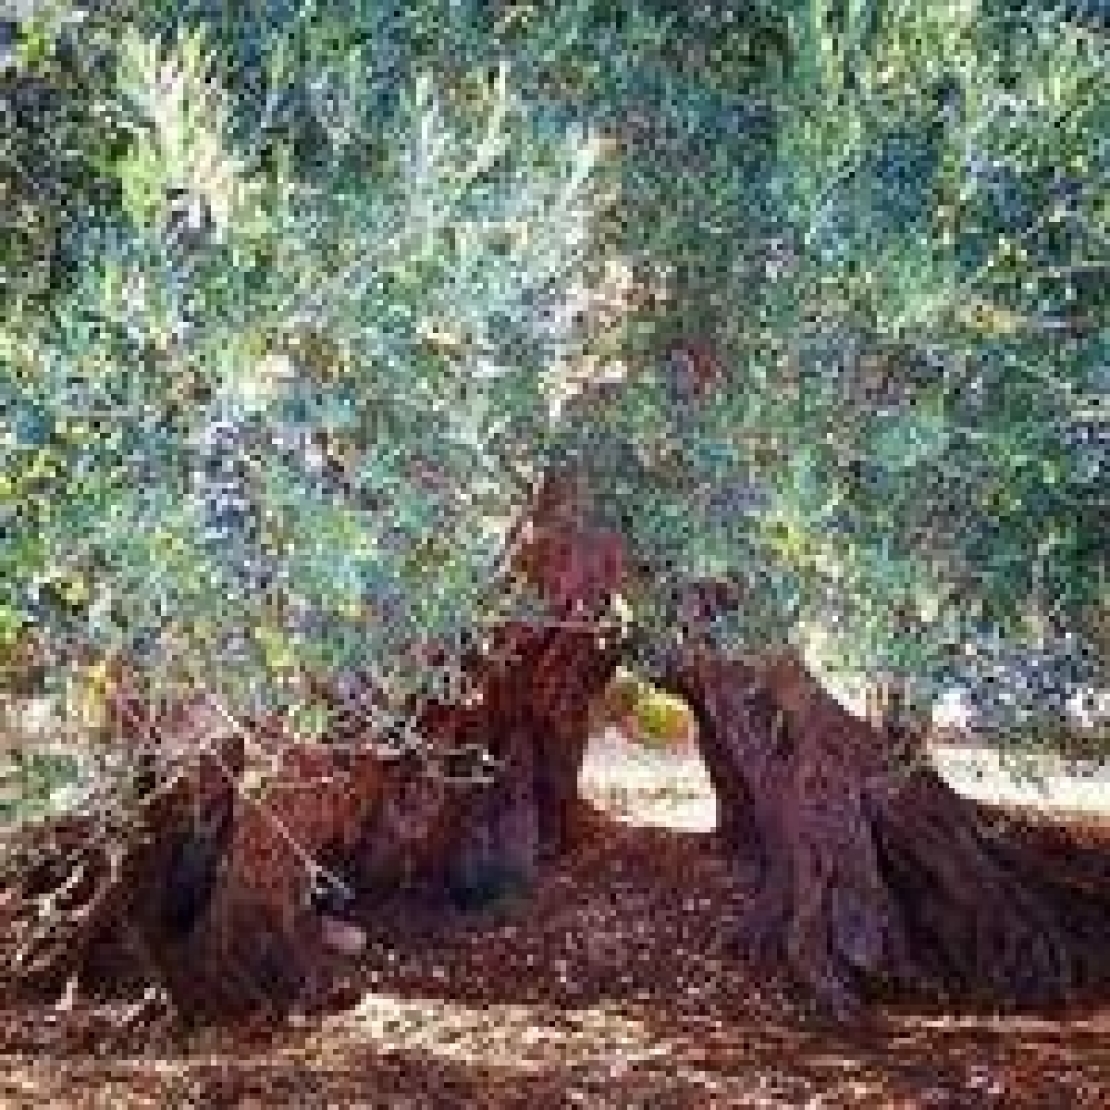 Gli olivi secolari sono un bene culturale comune e un valore economico